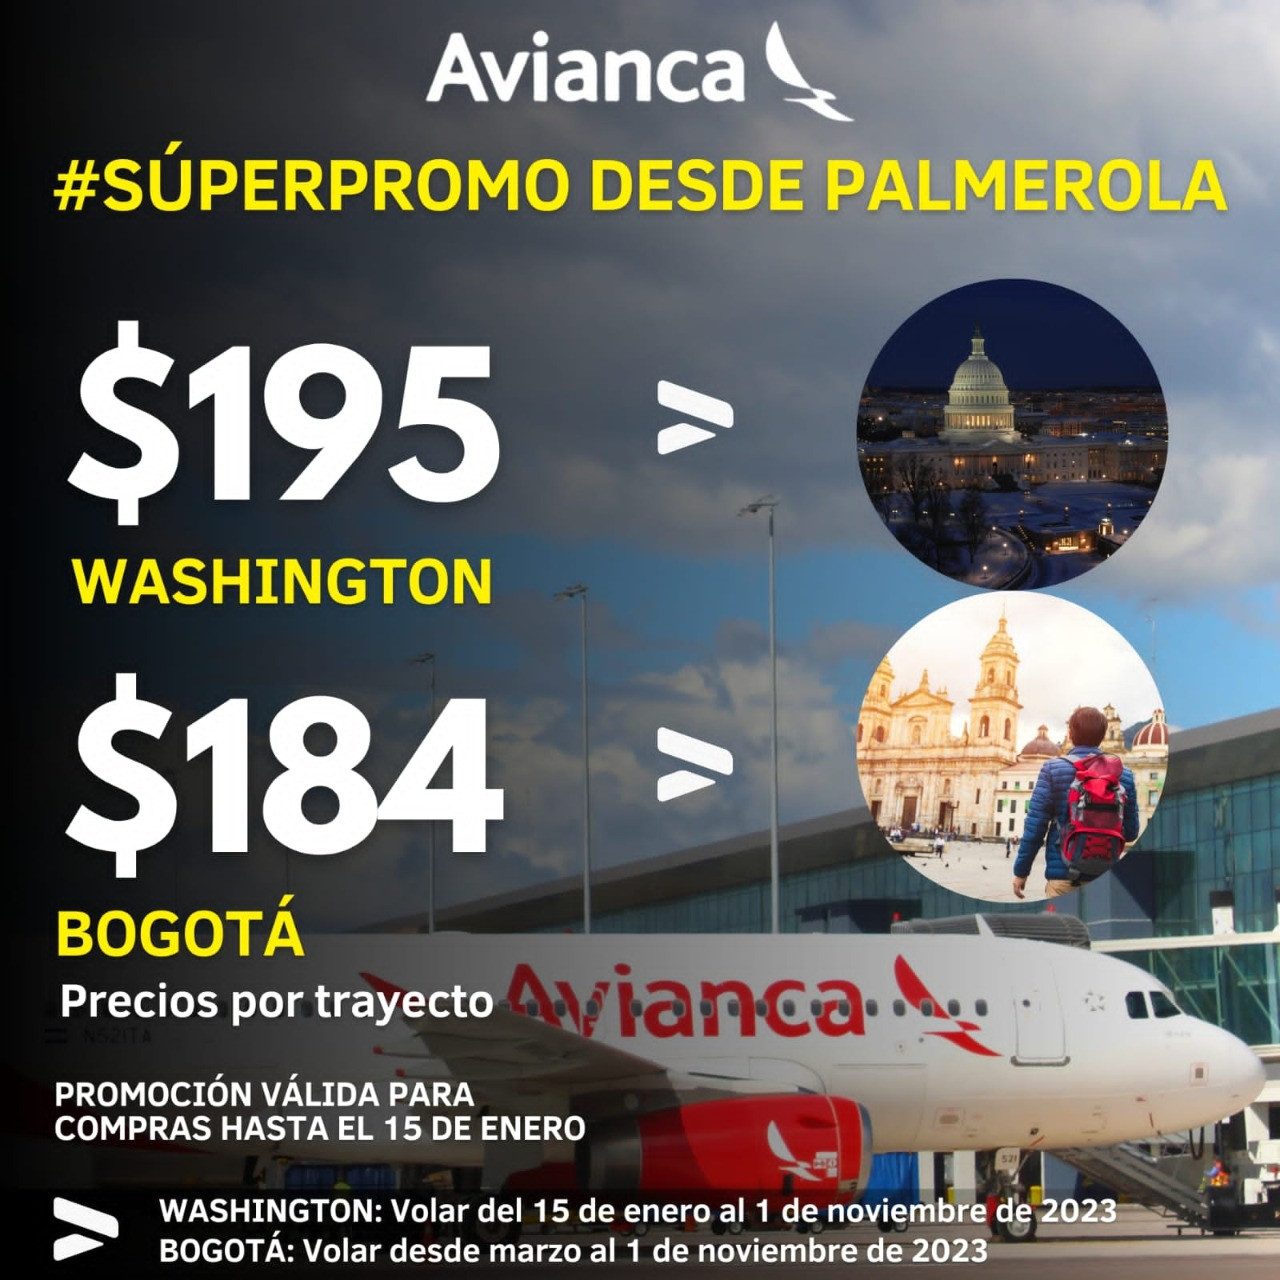 Noticias-Aeropuerto-Tegucigalpa-Honduras-Toncontín-Palmerola: Avianca lanza promoción de vuelos a Washington a $195 y a Bogotá a $184 por trayecto